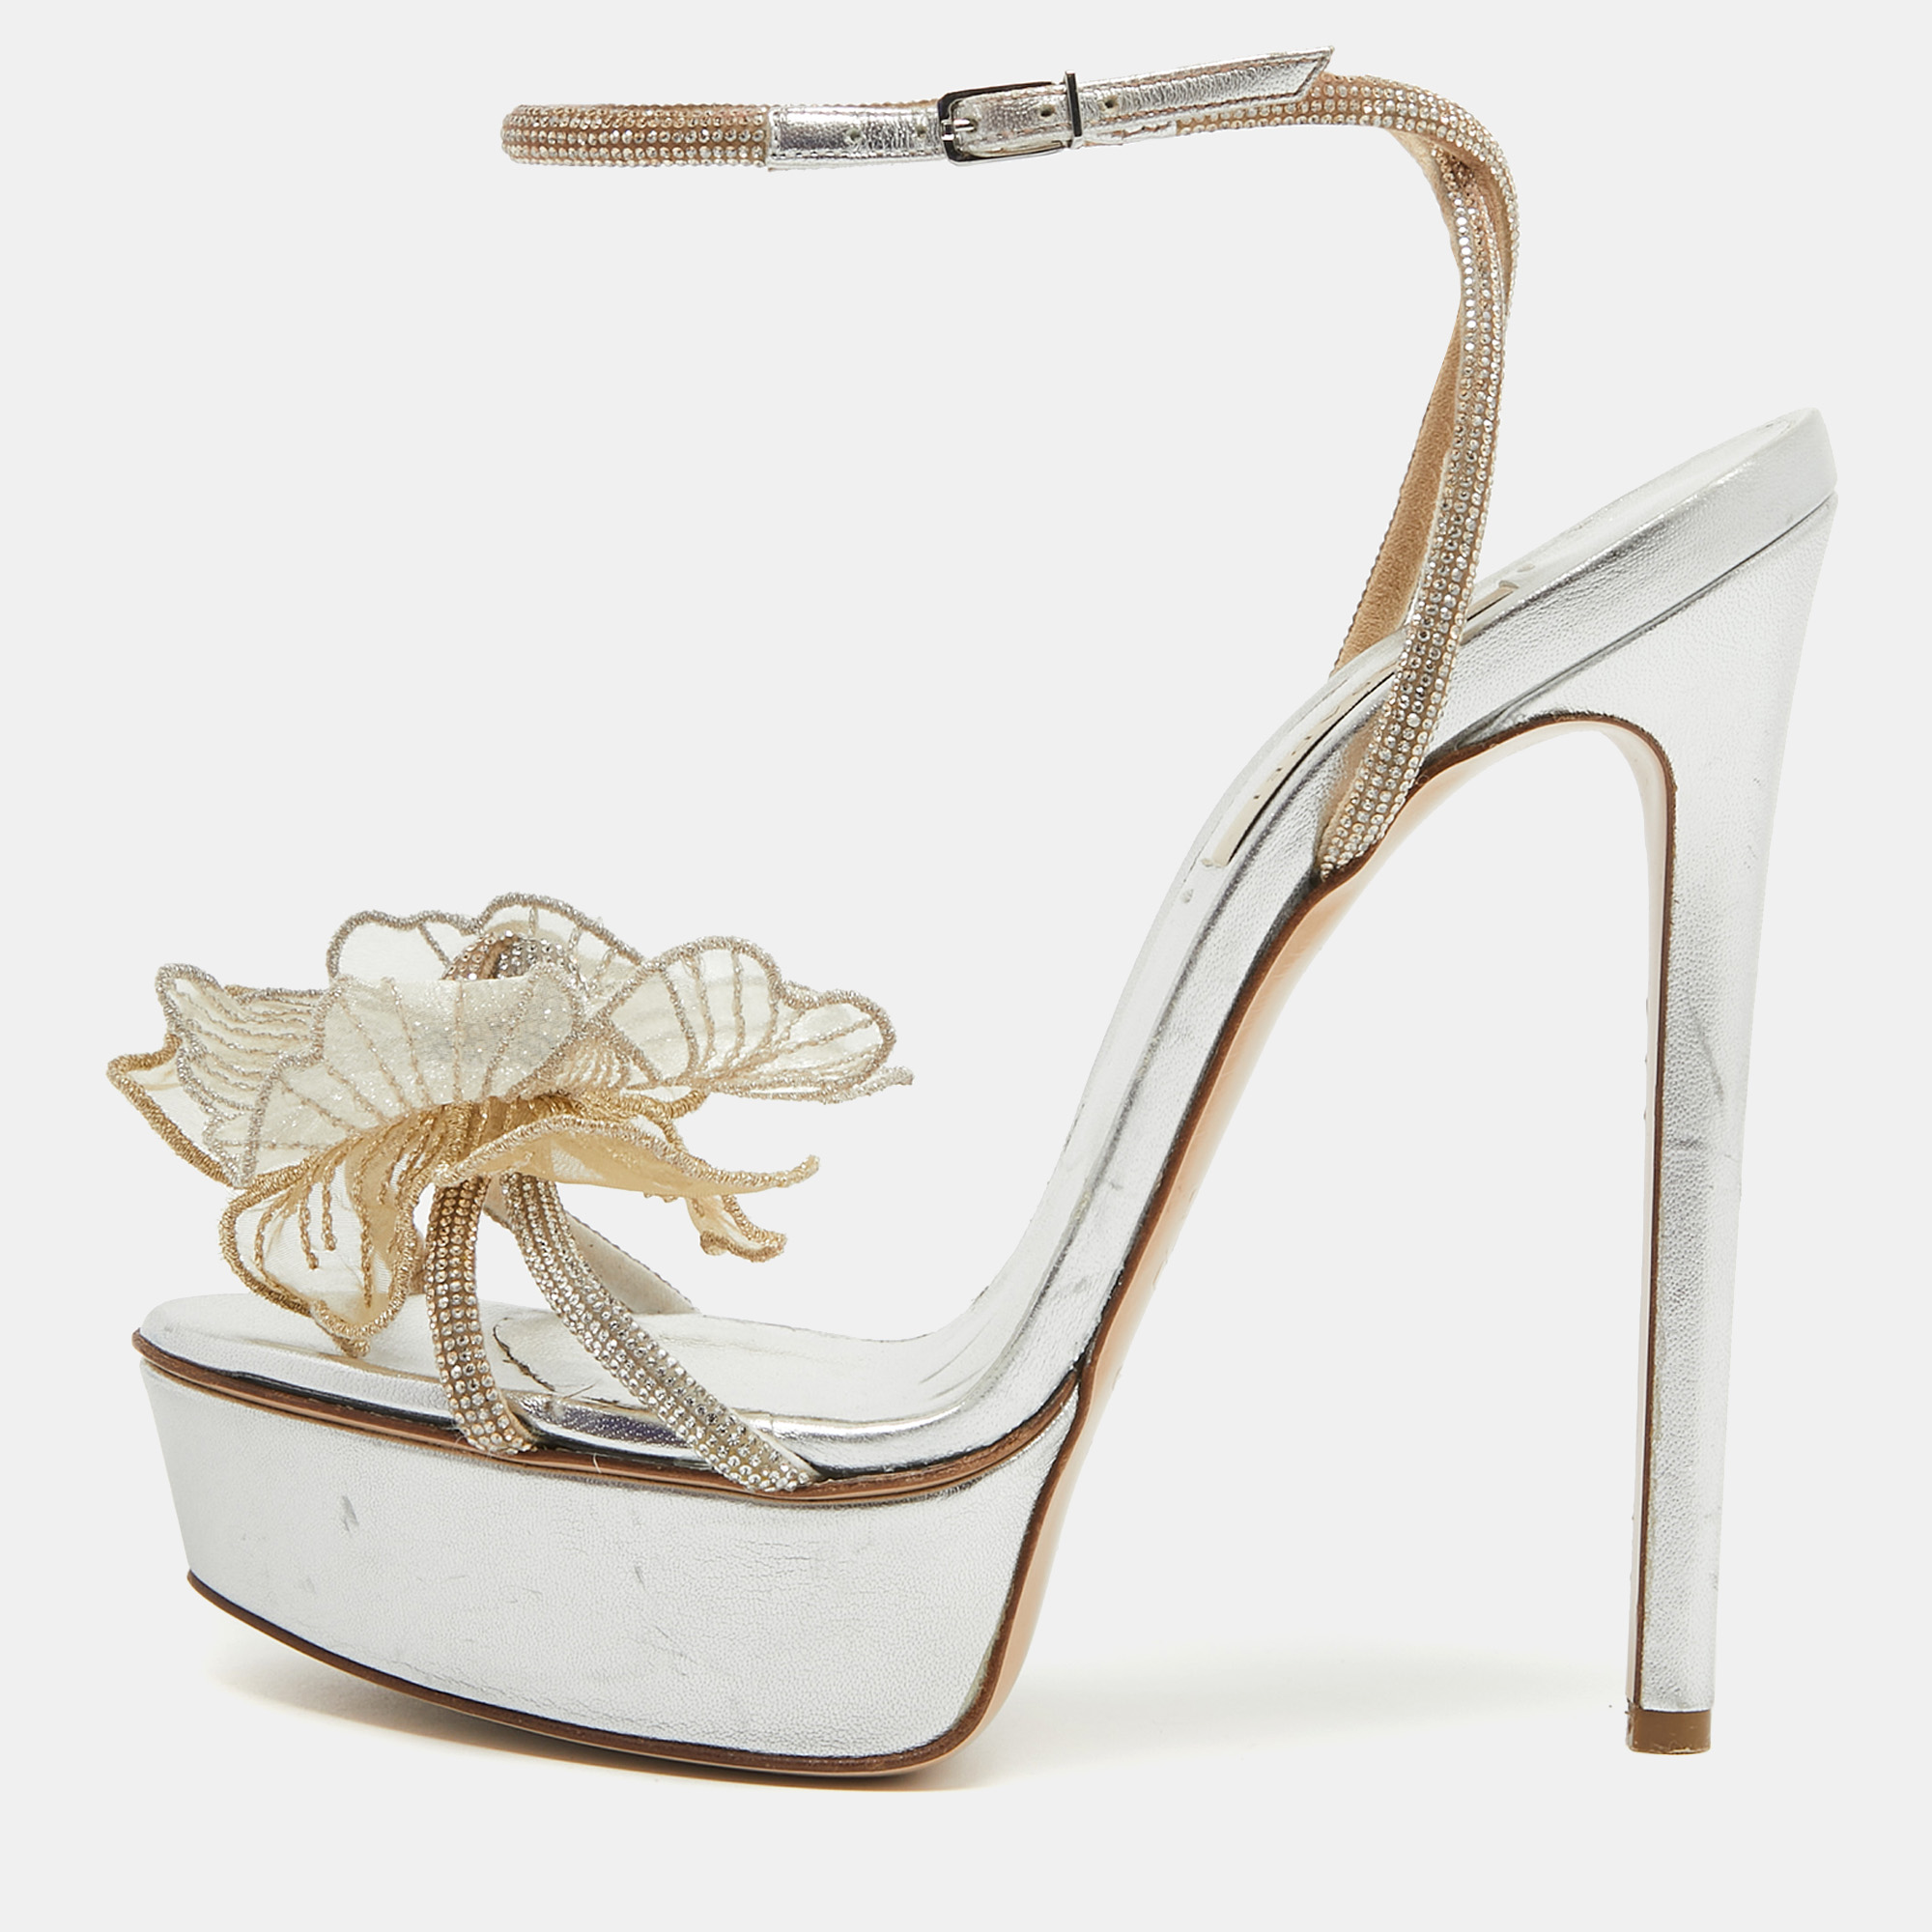 Casadei silver/gold crystal leather flower embellished platform ankle strap sandals size 38.5